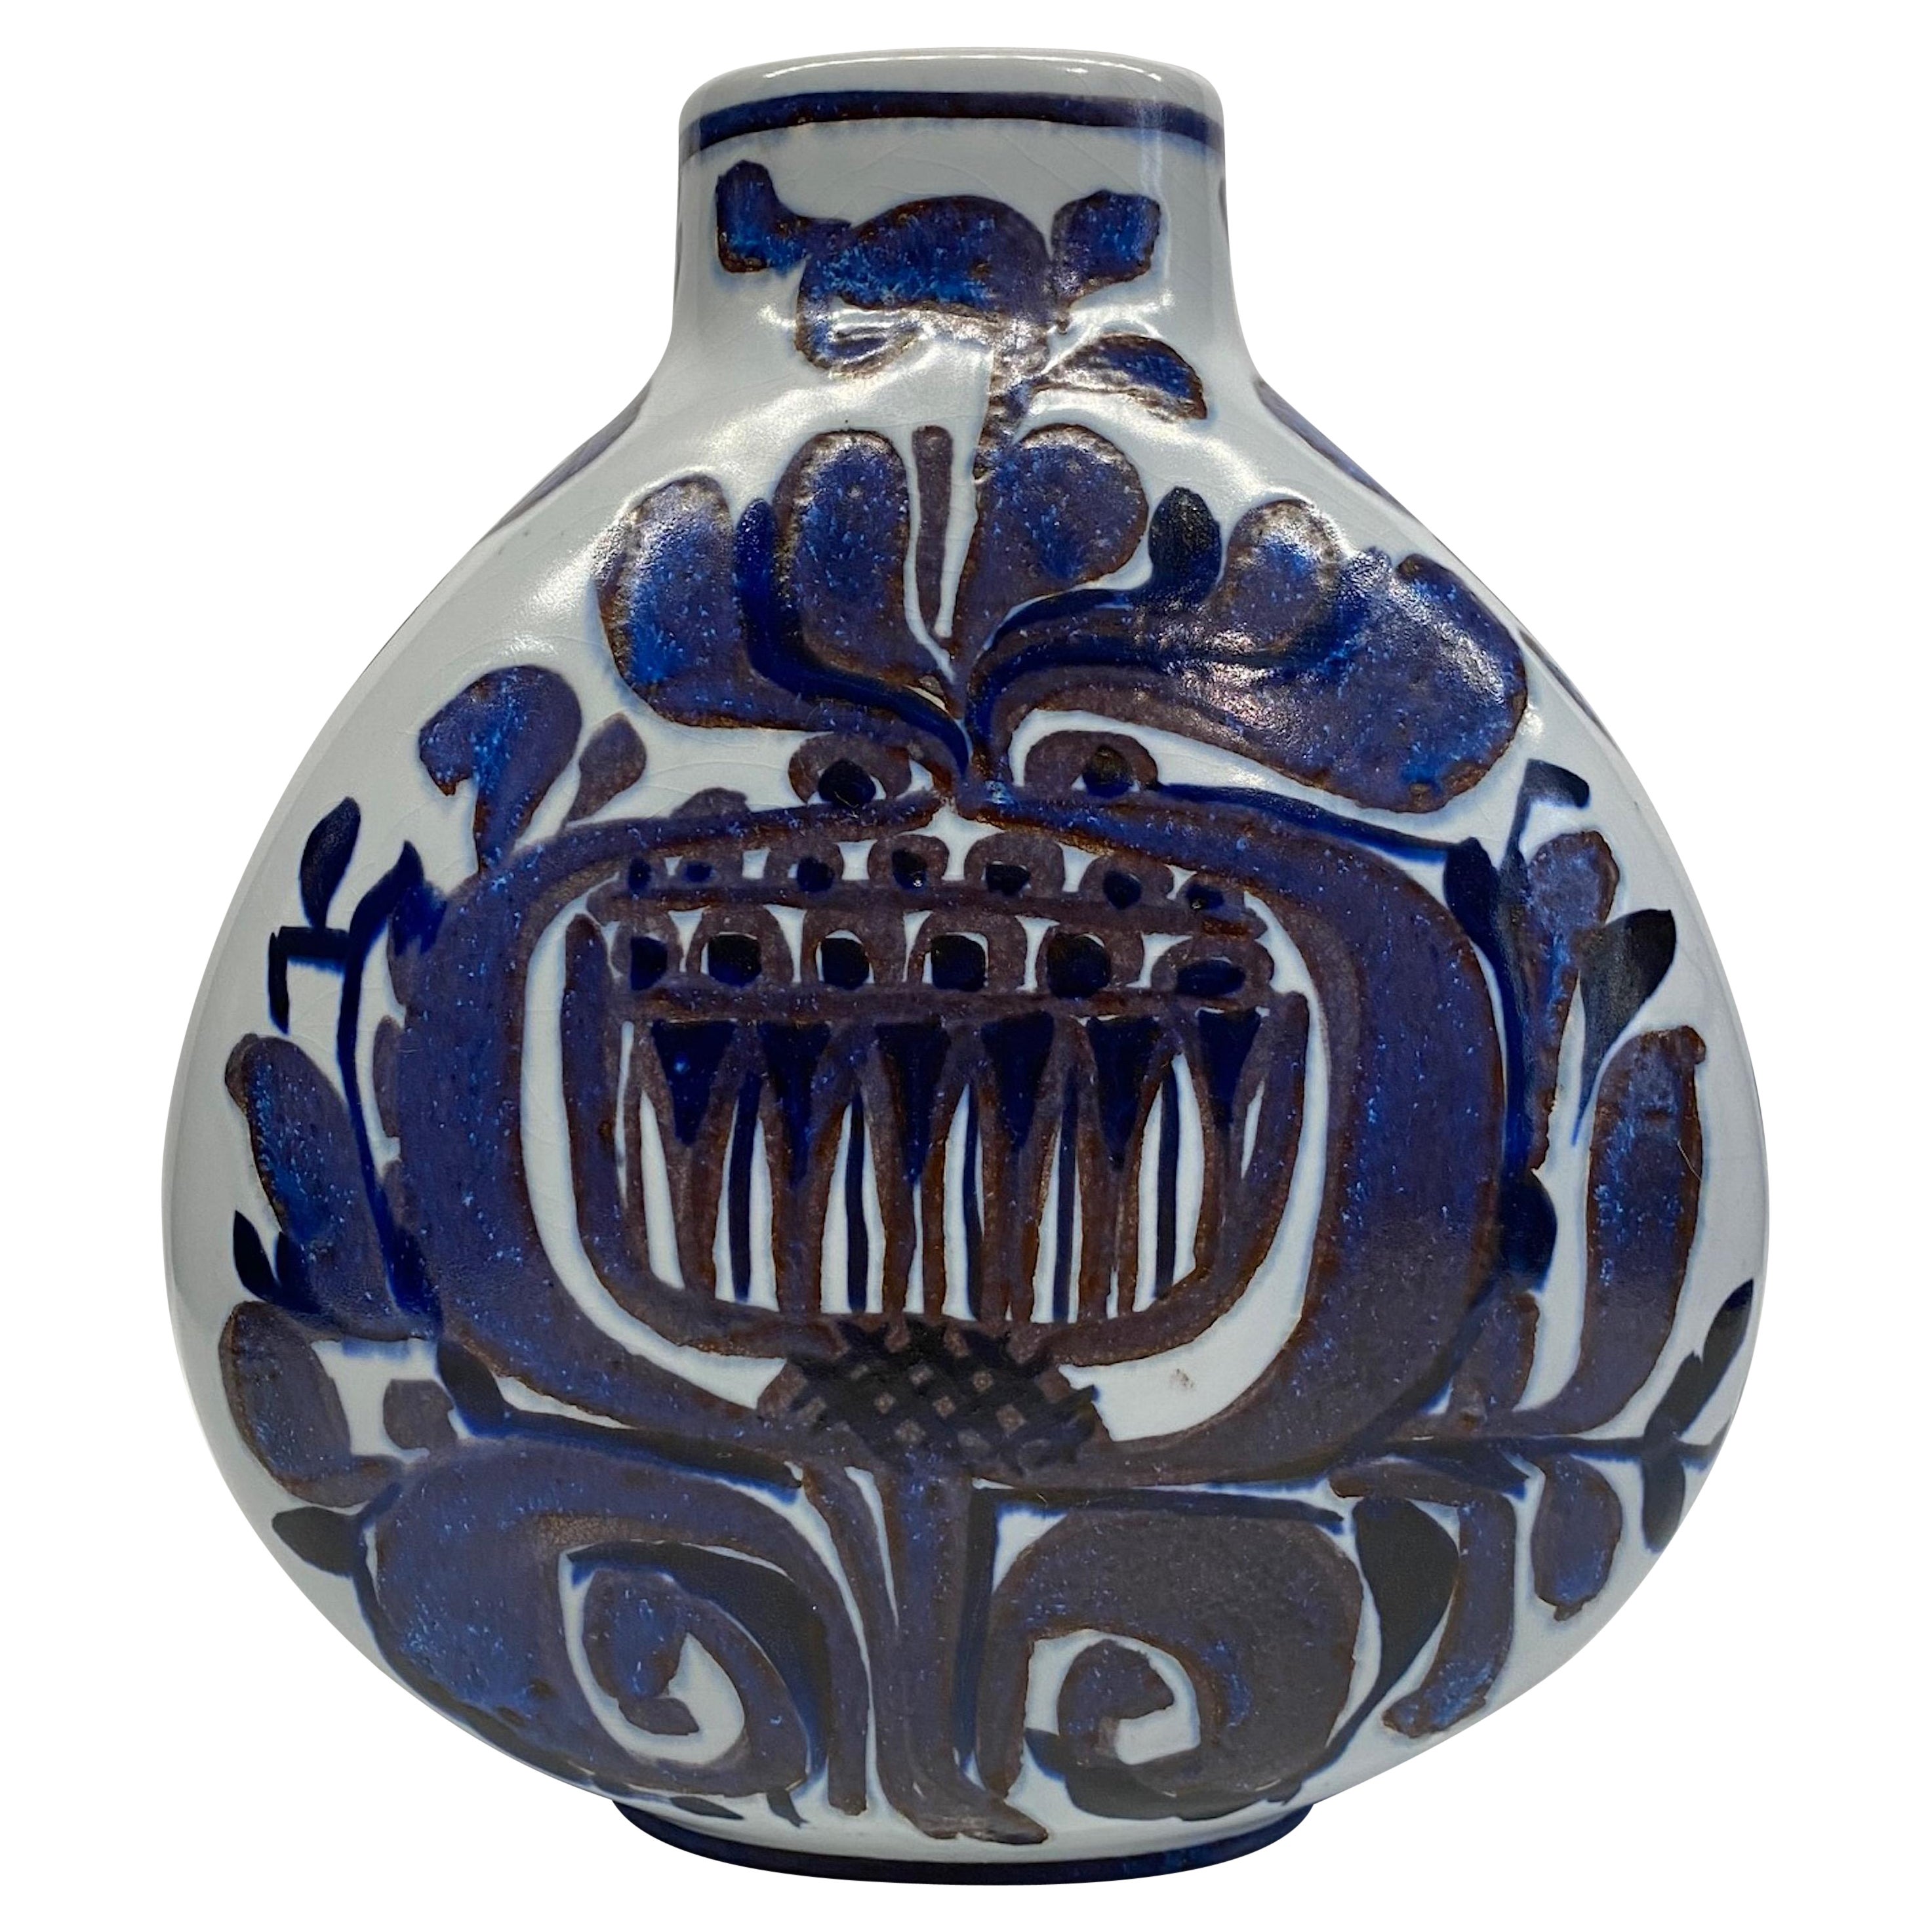  Kari Christiansen for Royal Copenhagen & Alumia Art Pottery Ceramic Vase For Sale